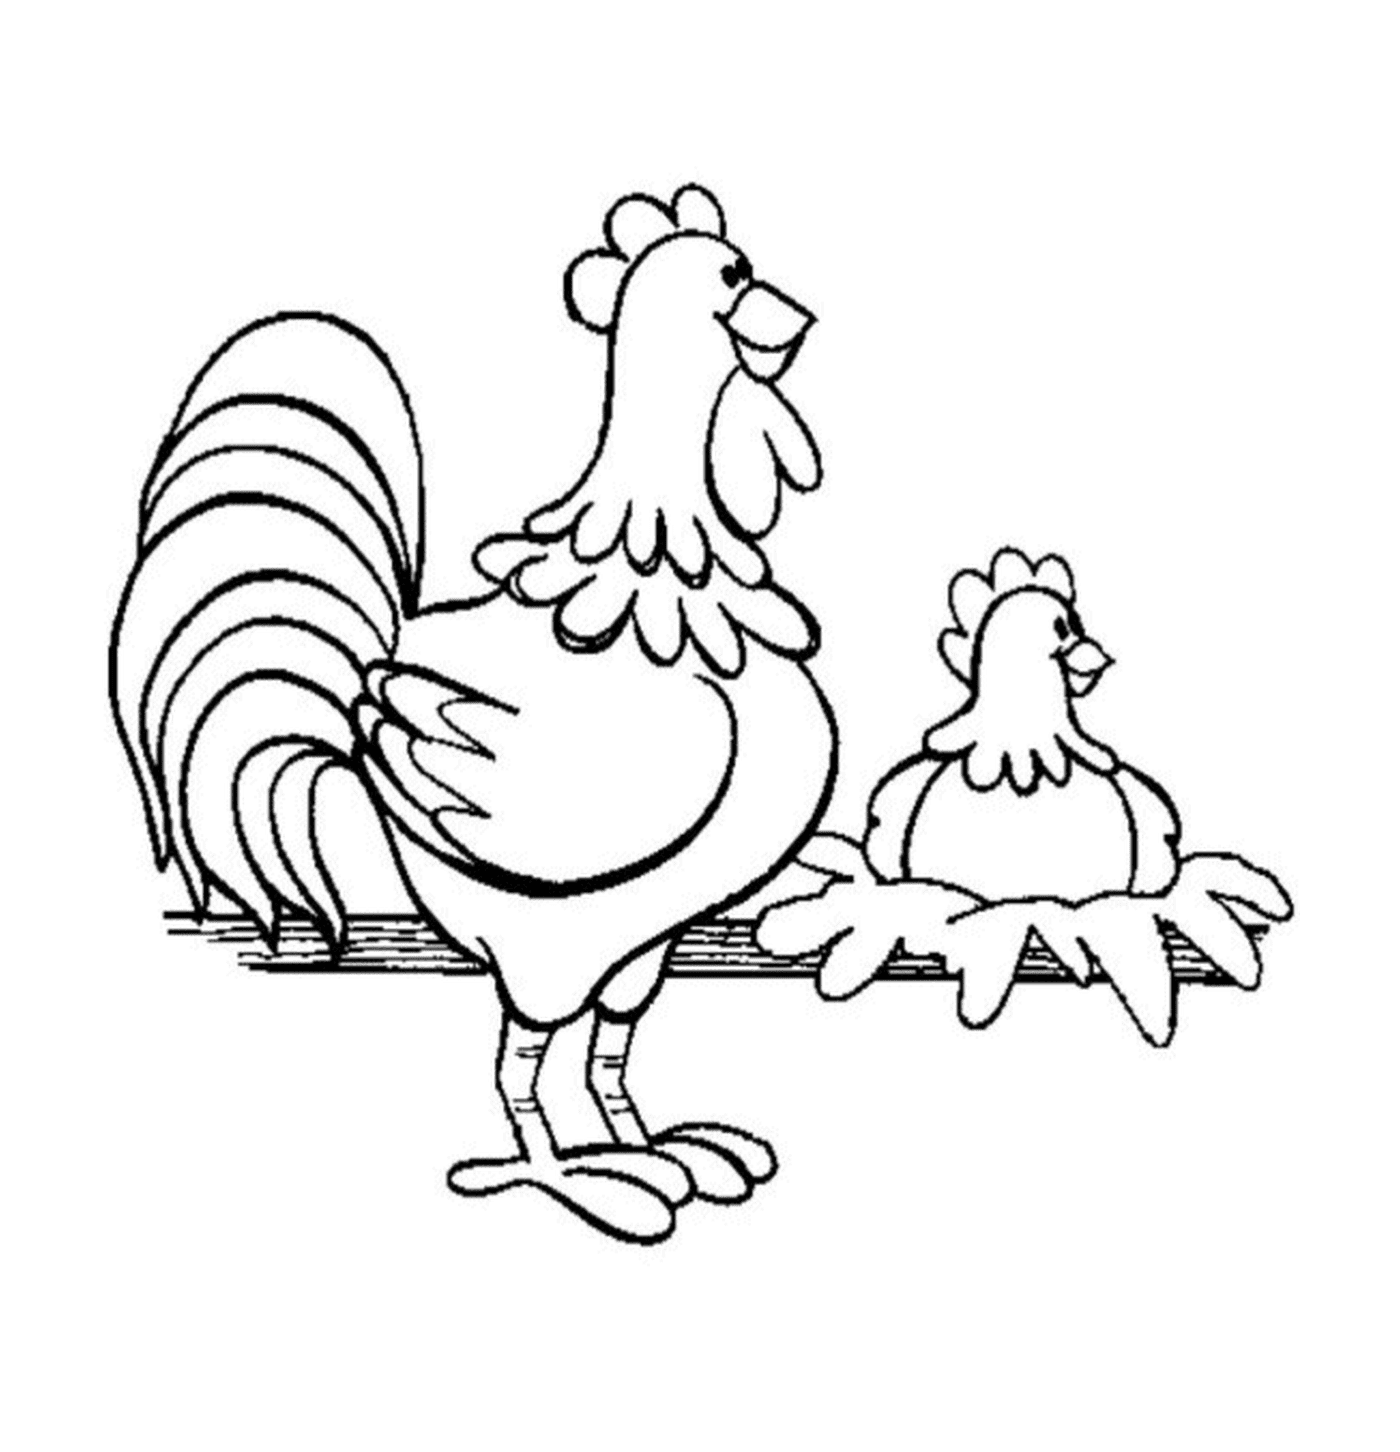  دجاجتان على السياج 